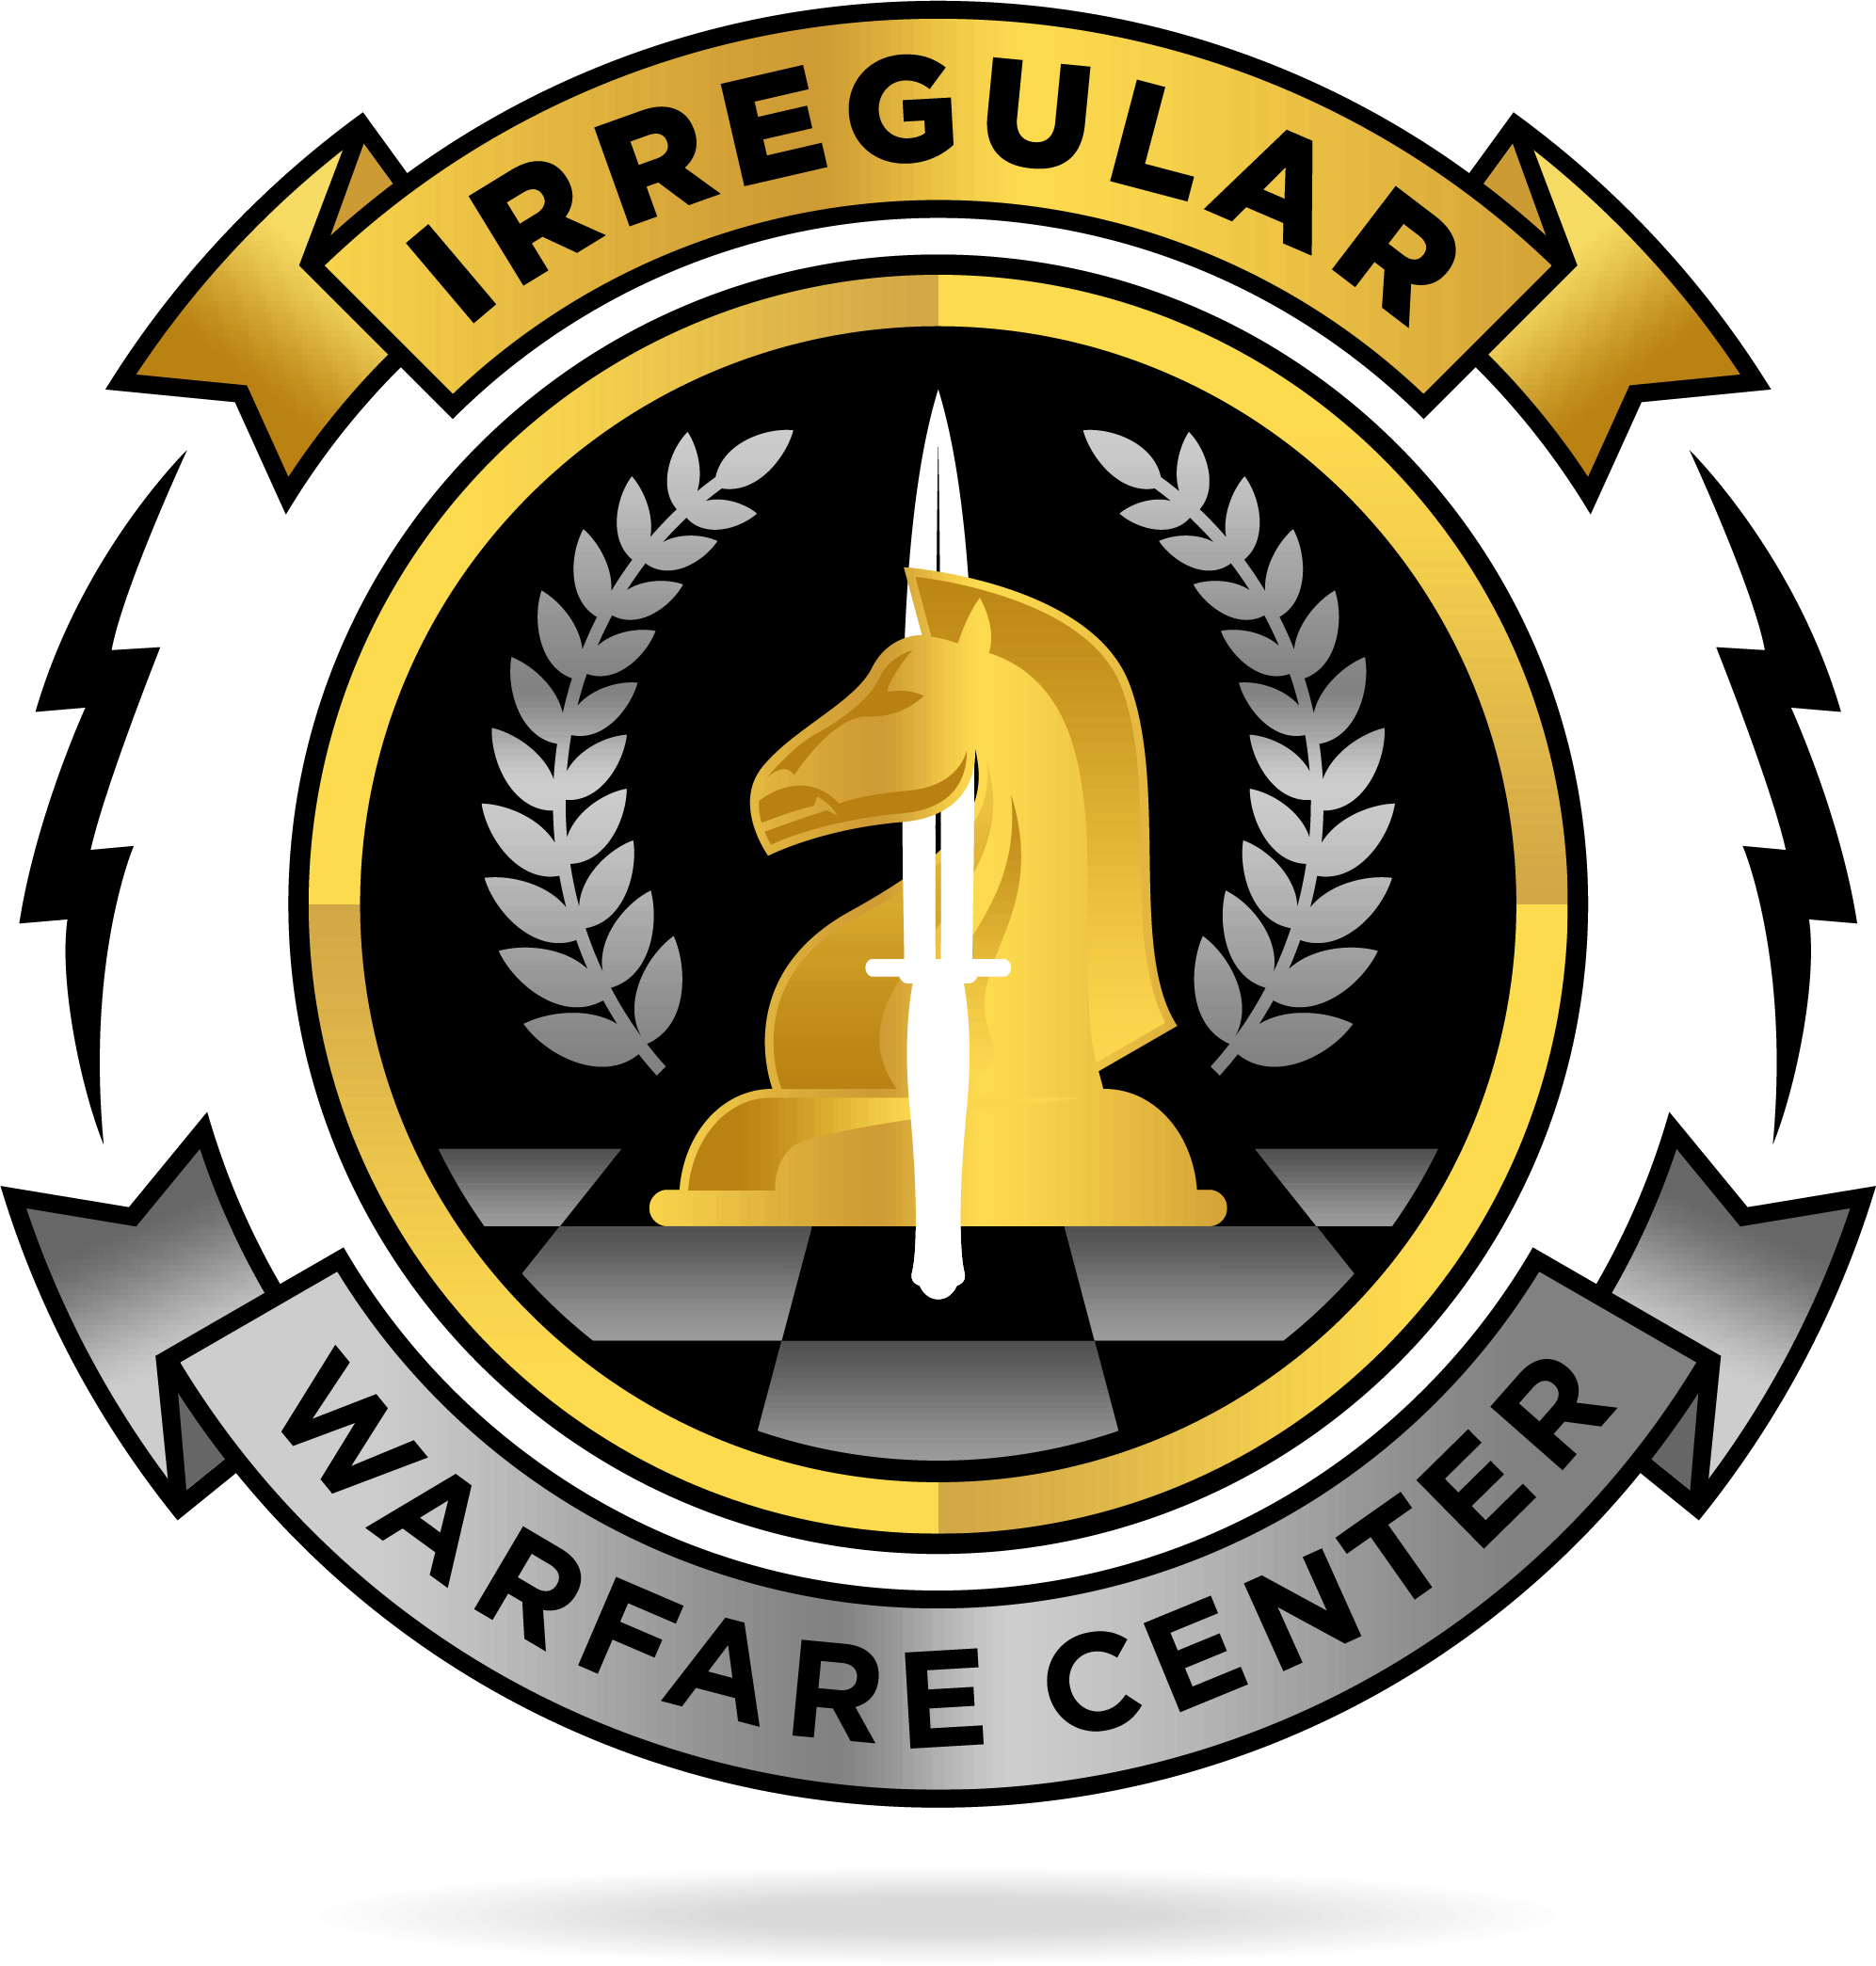 Irregular Warfare Center